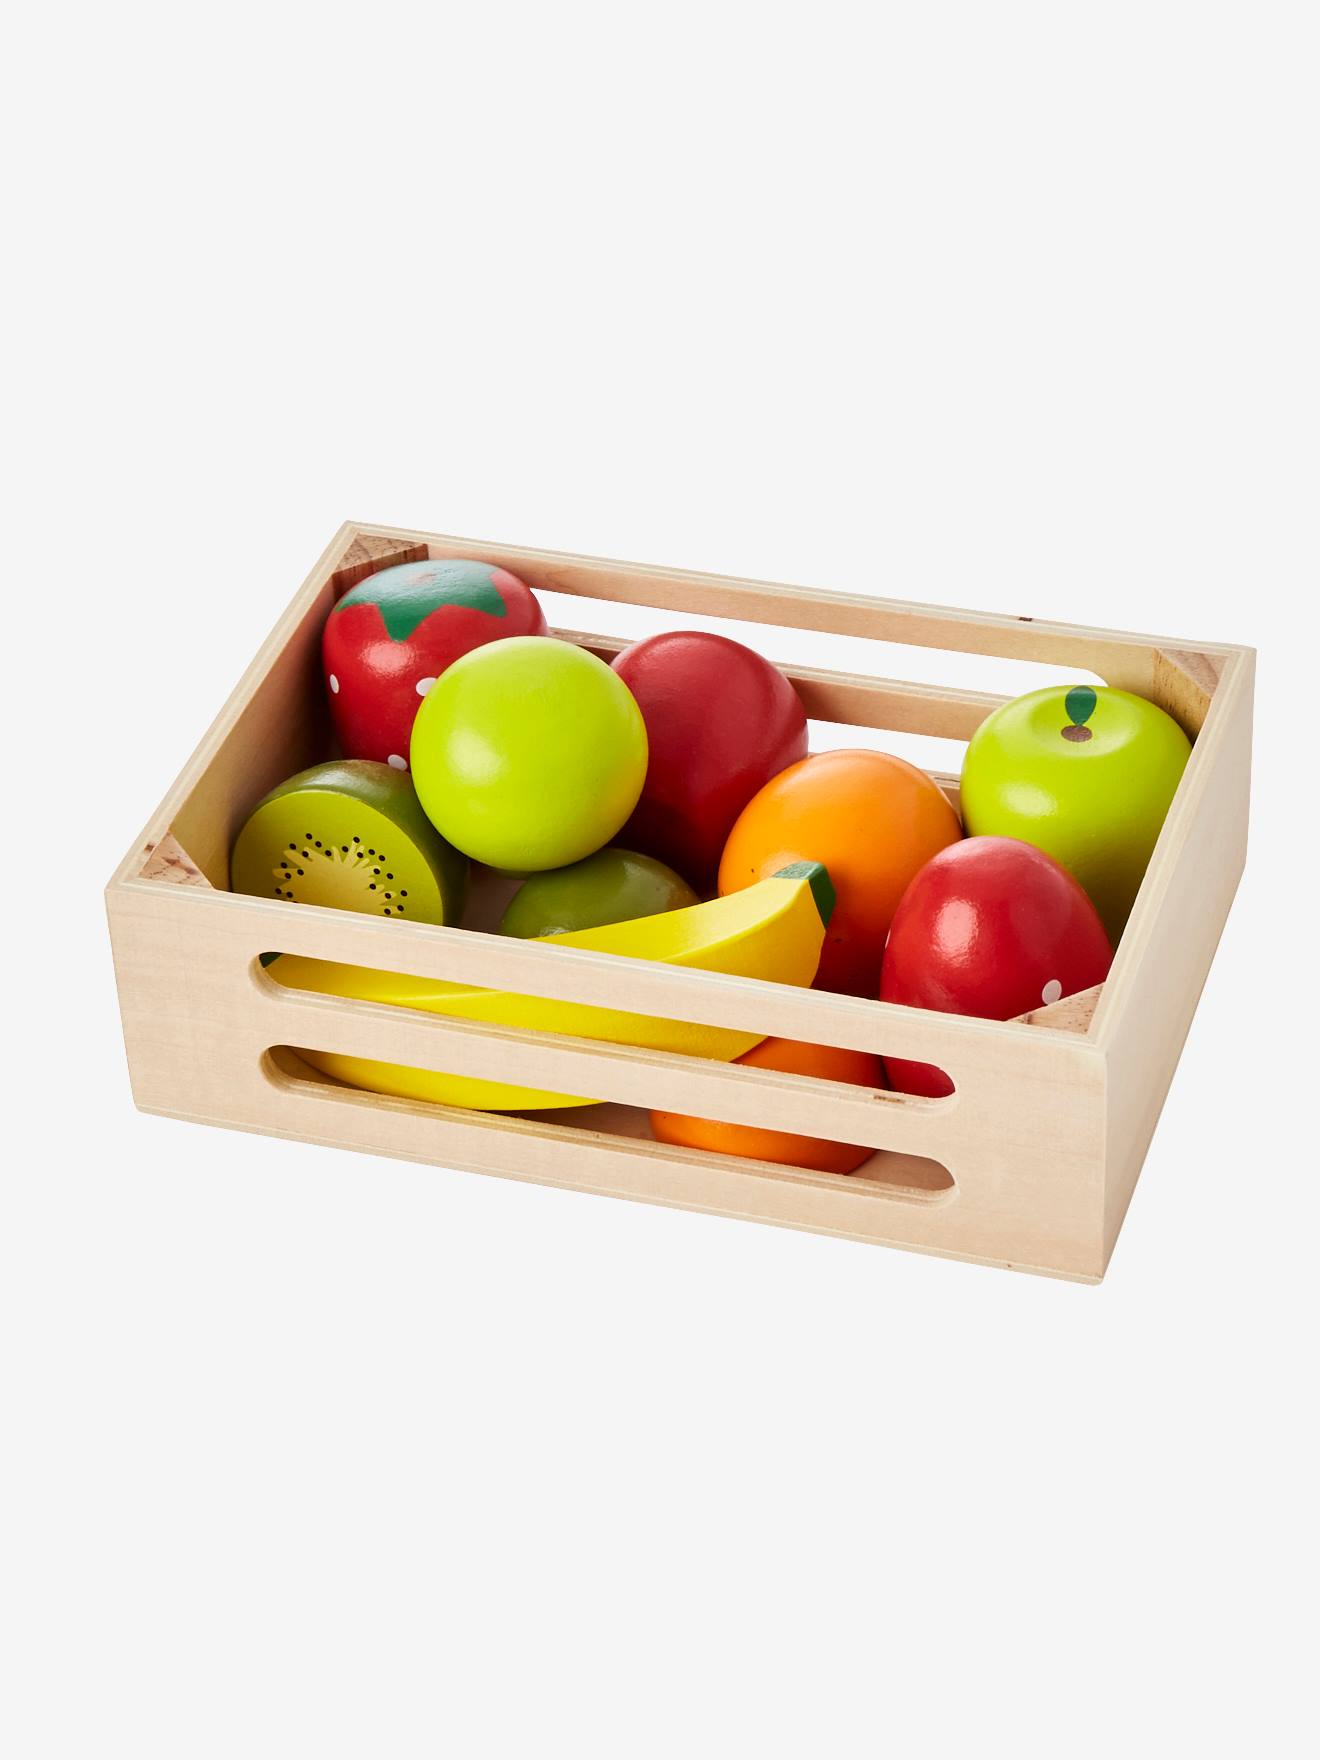 Empilhe as Frutas - Jogo de Madeira - A Casinha Brinquedos